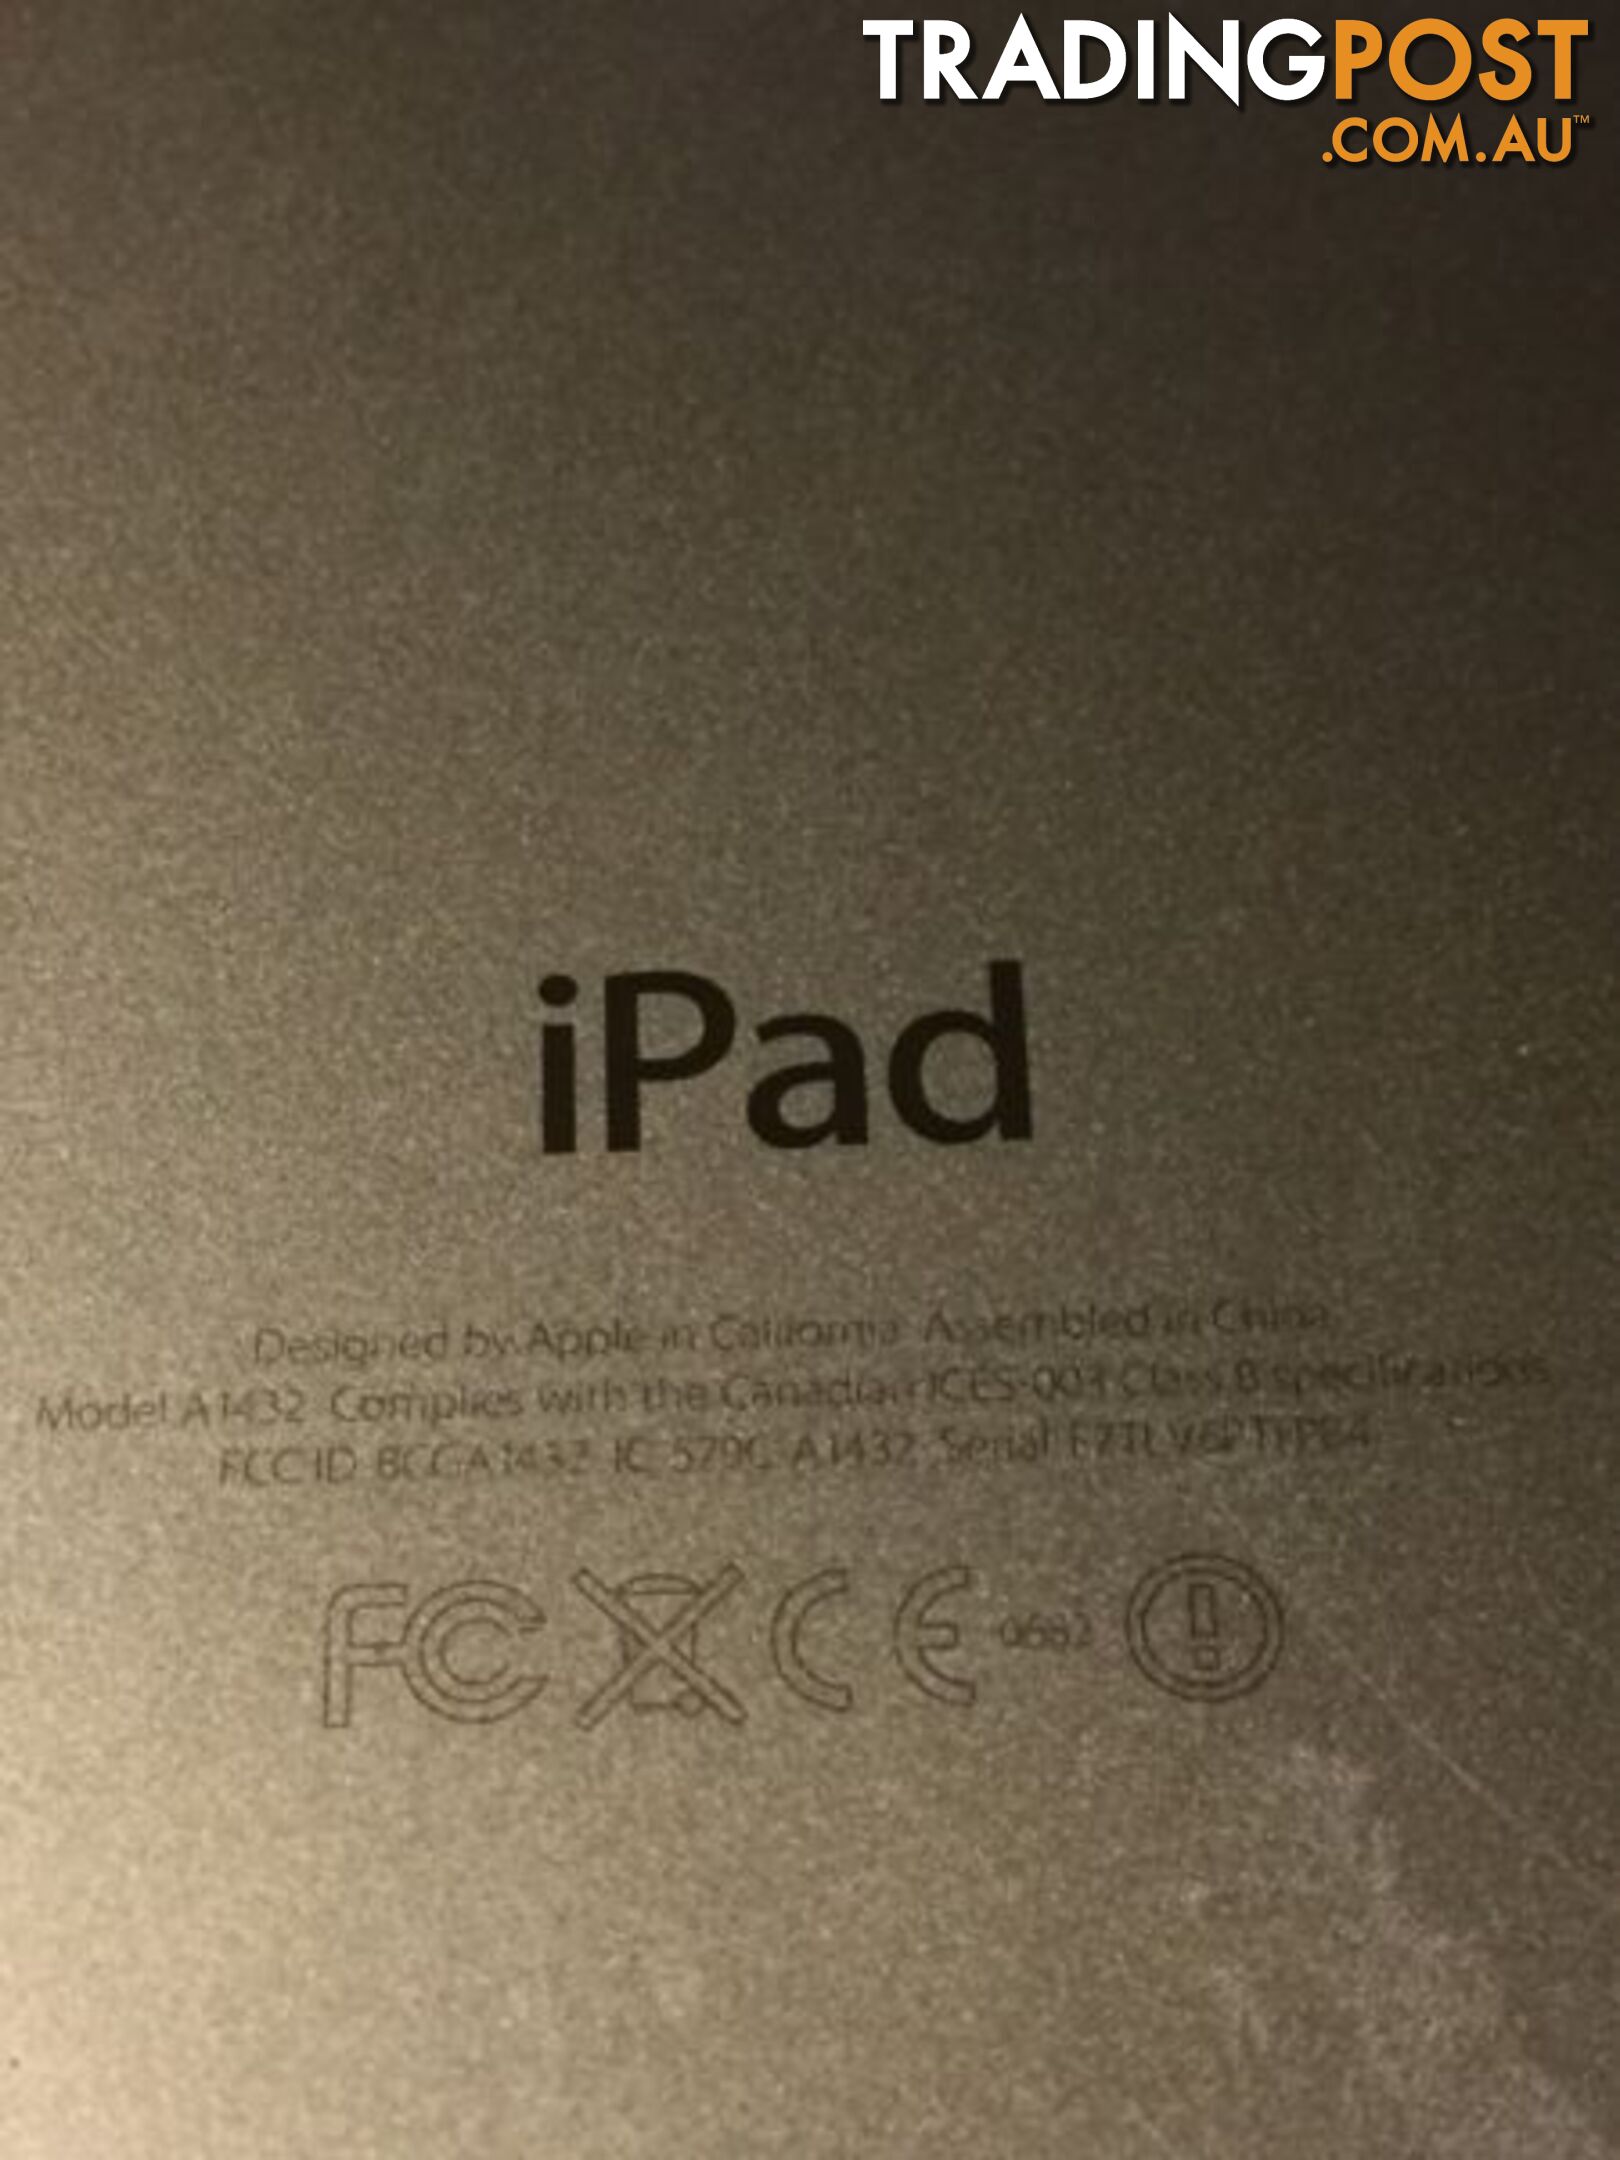 iPad mini - wifi only - Locked